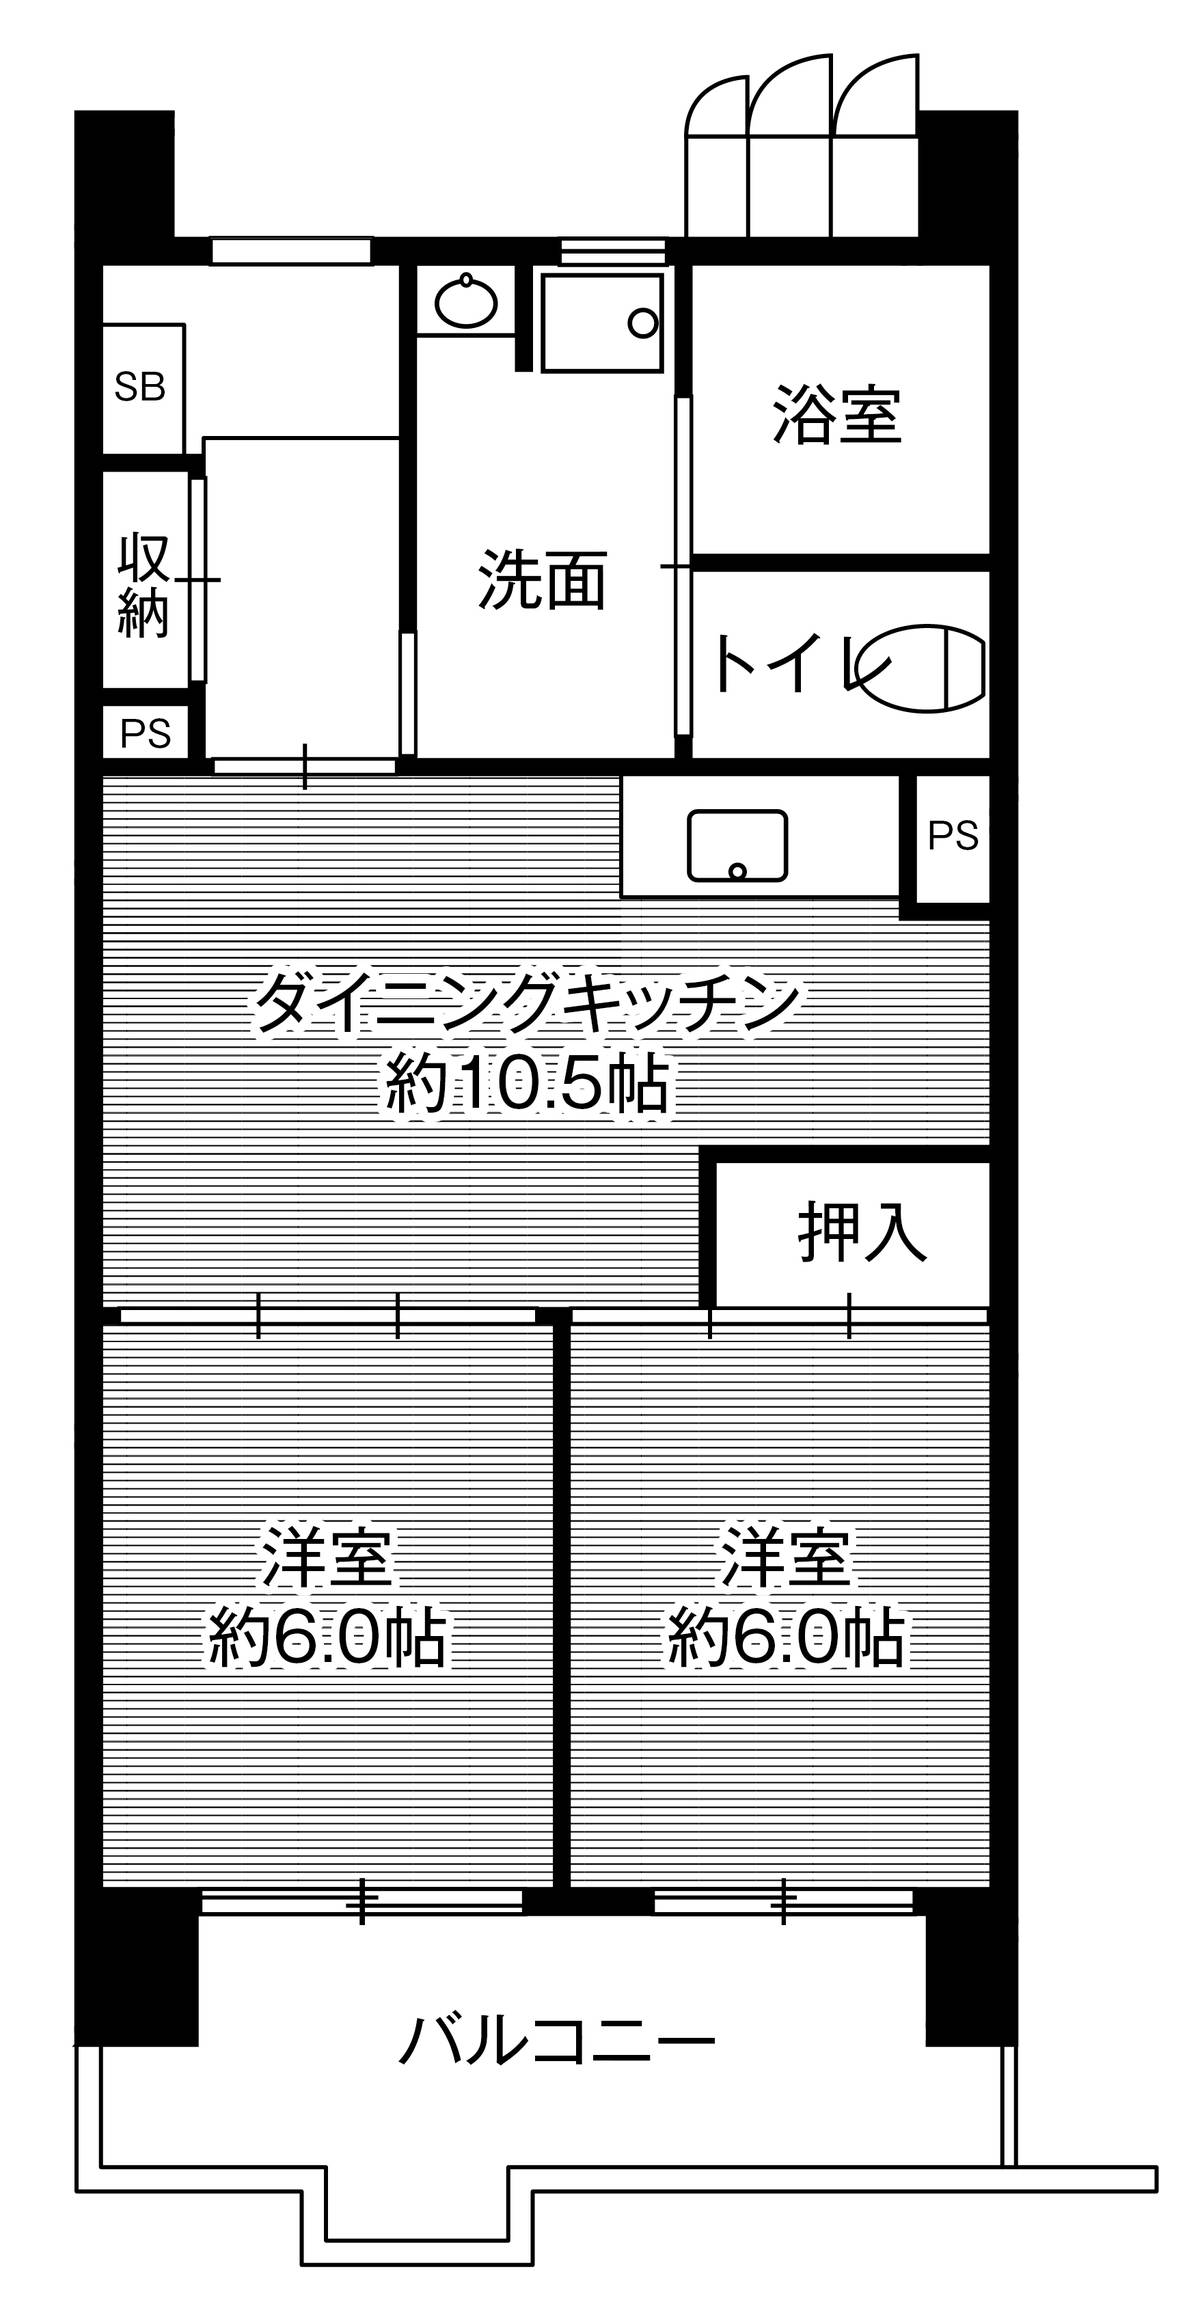 2LDK floorplan of Village House Kasadera Tower in Minami-ku